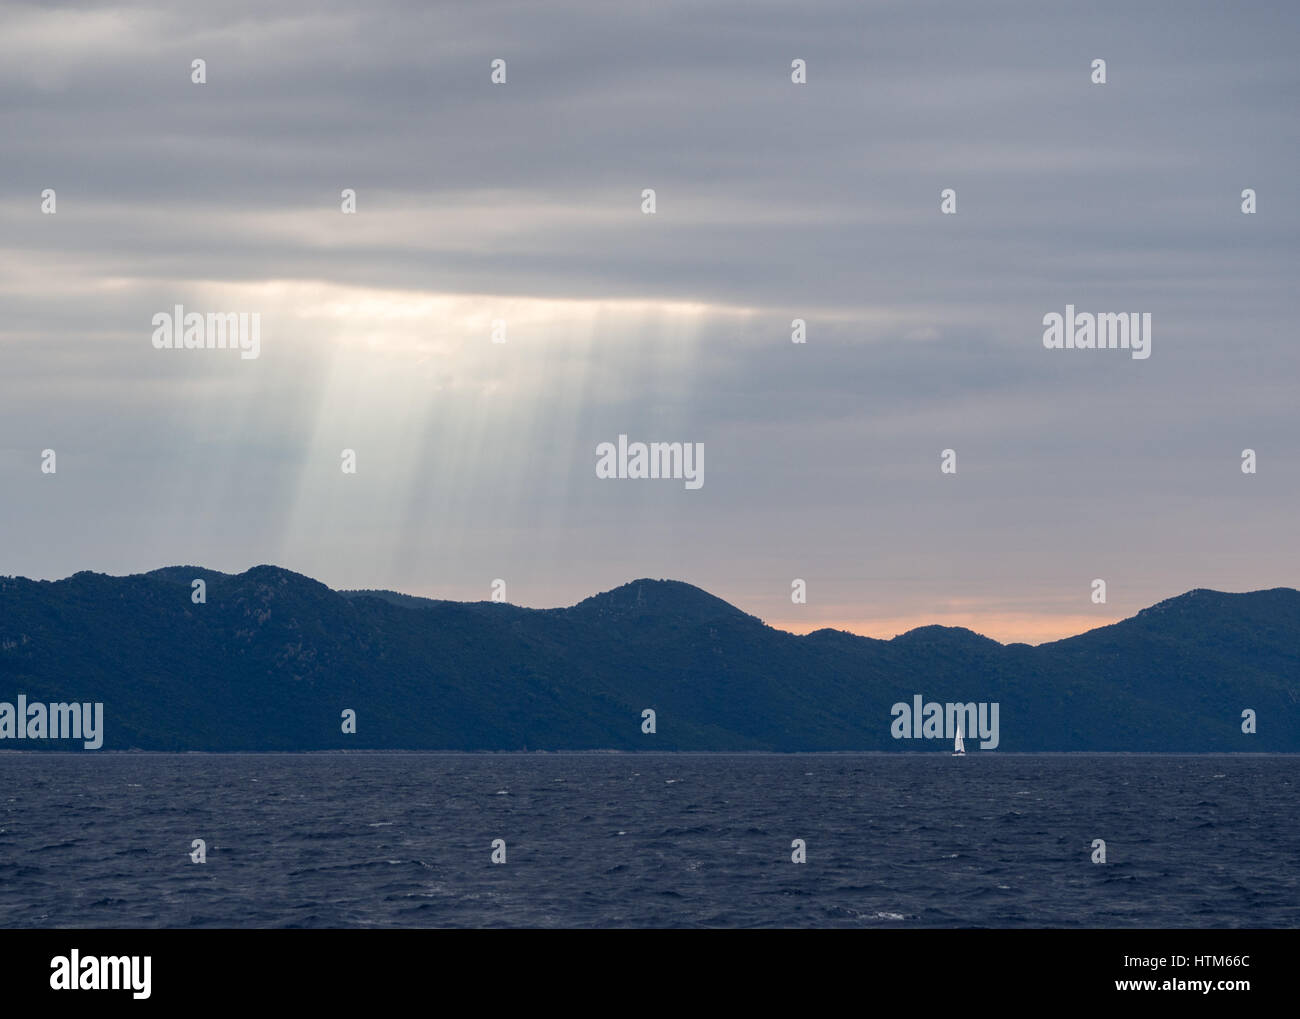 Les rayons du soleil brillant à travers les nuages sombres orageux au-dessus d'une silhouette de collines et montagnes randonnée au coucher du soleil avec location sur mer océan, Croatie Banque D'Images